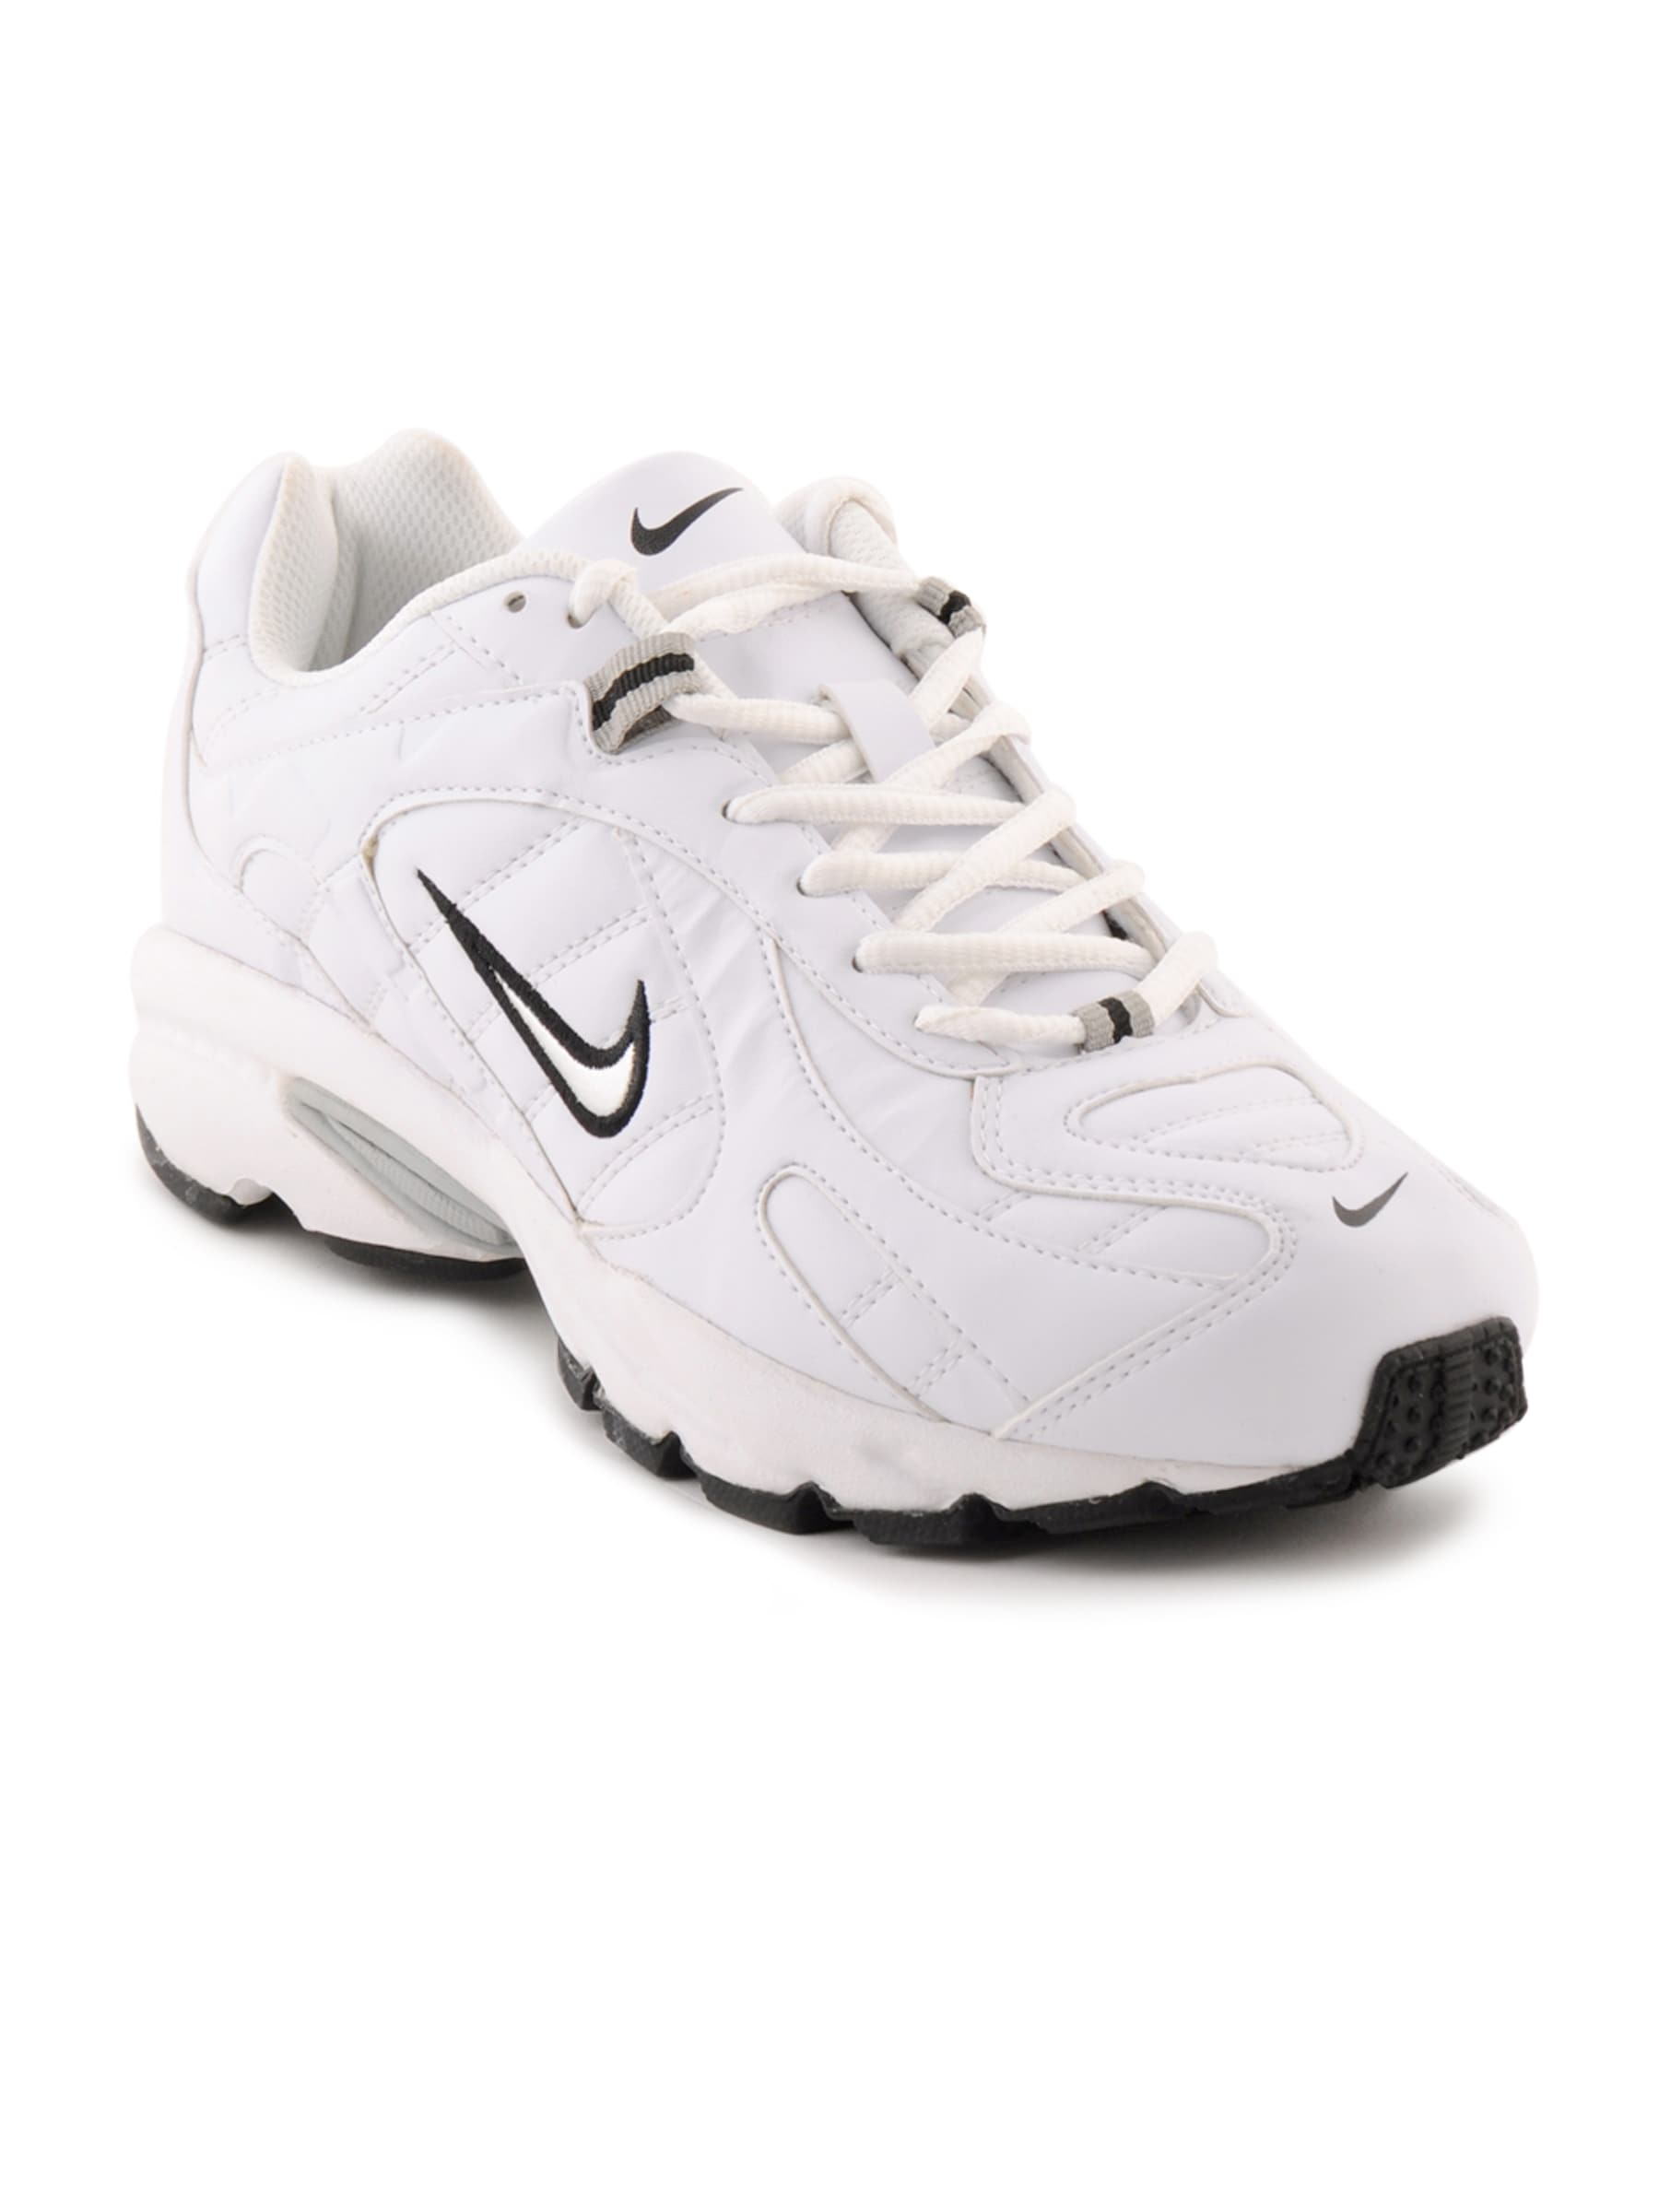 Nike Men 2.04 SL White Sports Shoes